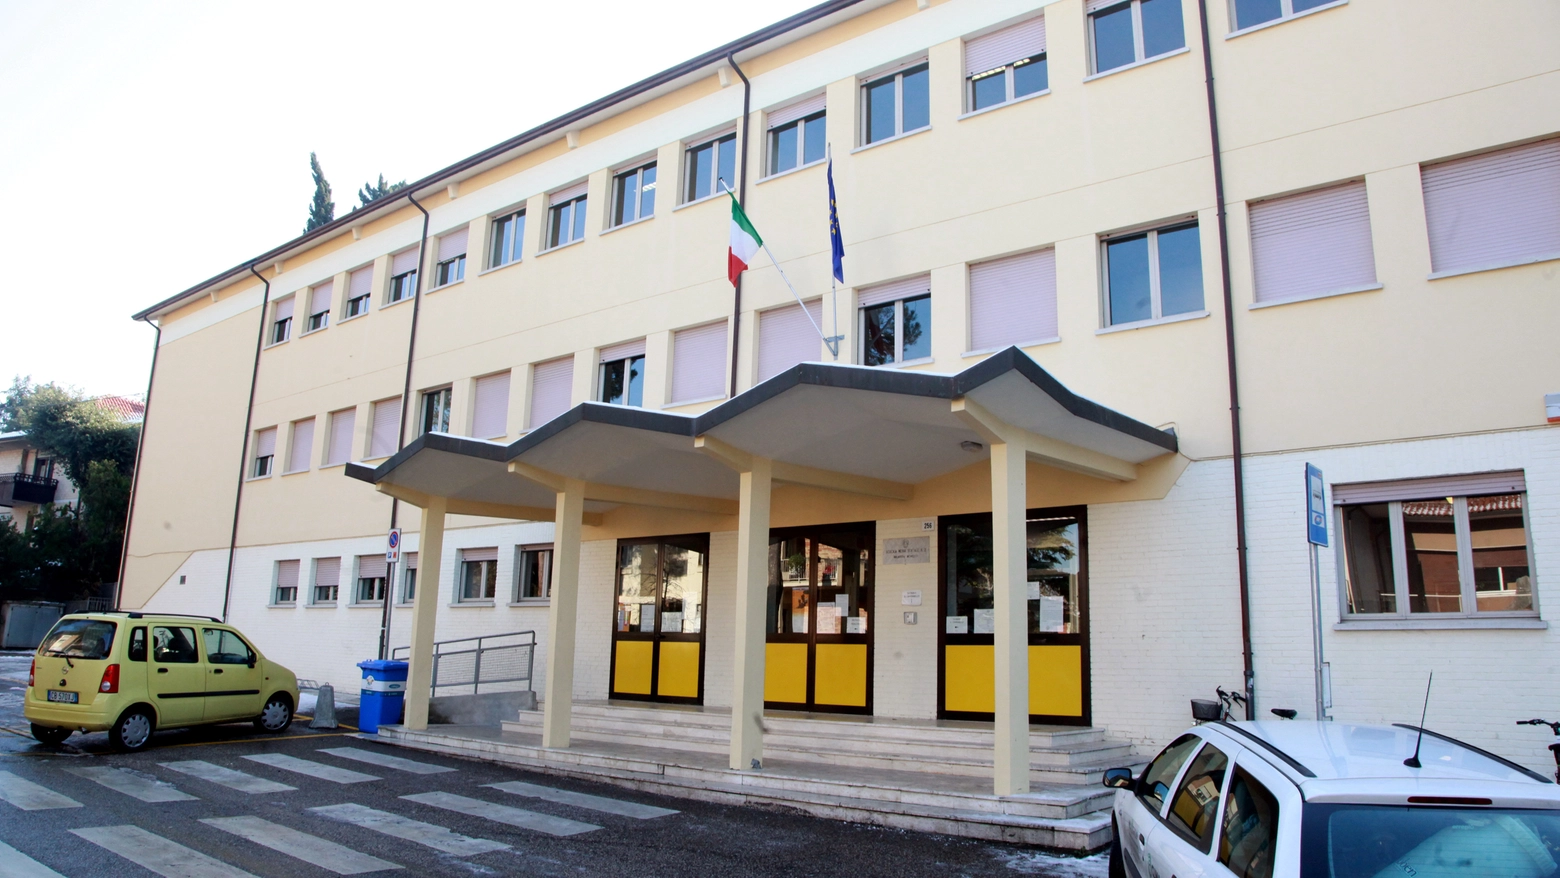 La scuola media Pascoli di Cesena, dov'è avvenuta l'aggressione